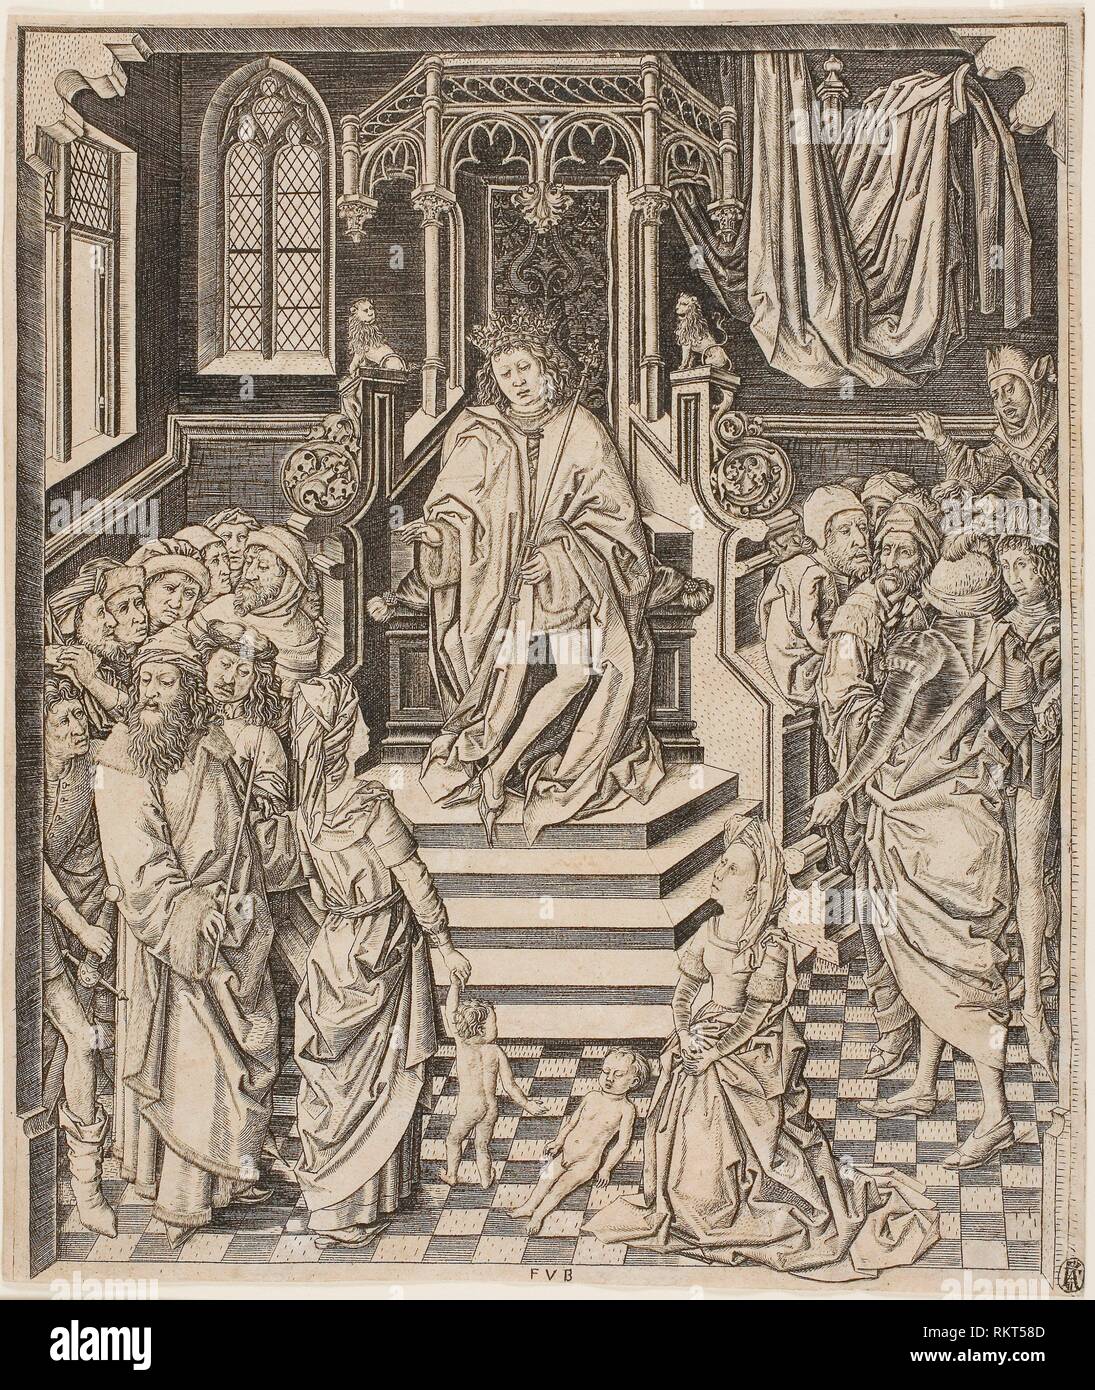 El juicio de Salomón - c. 1475-1500 - artista desconocido Netherlandish,  Siglo XV - Origen: Países Bajos Fecha: 1470-1500, medio: Grabado en  Fotografía de stock - Alamy